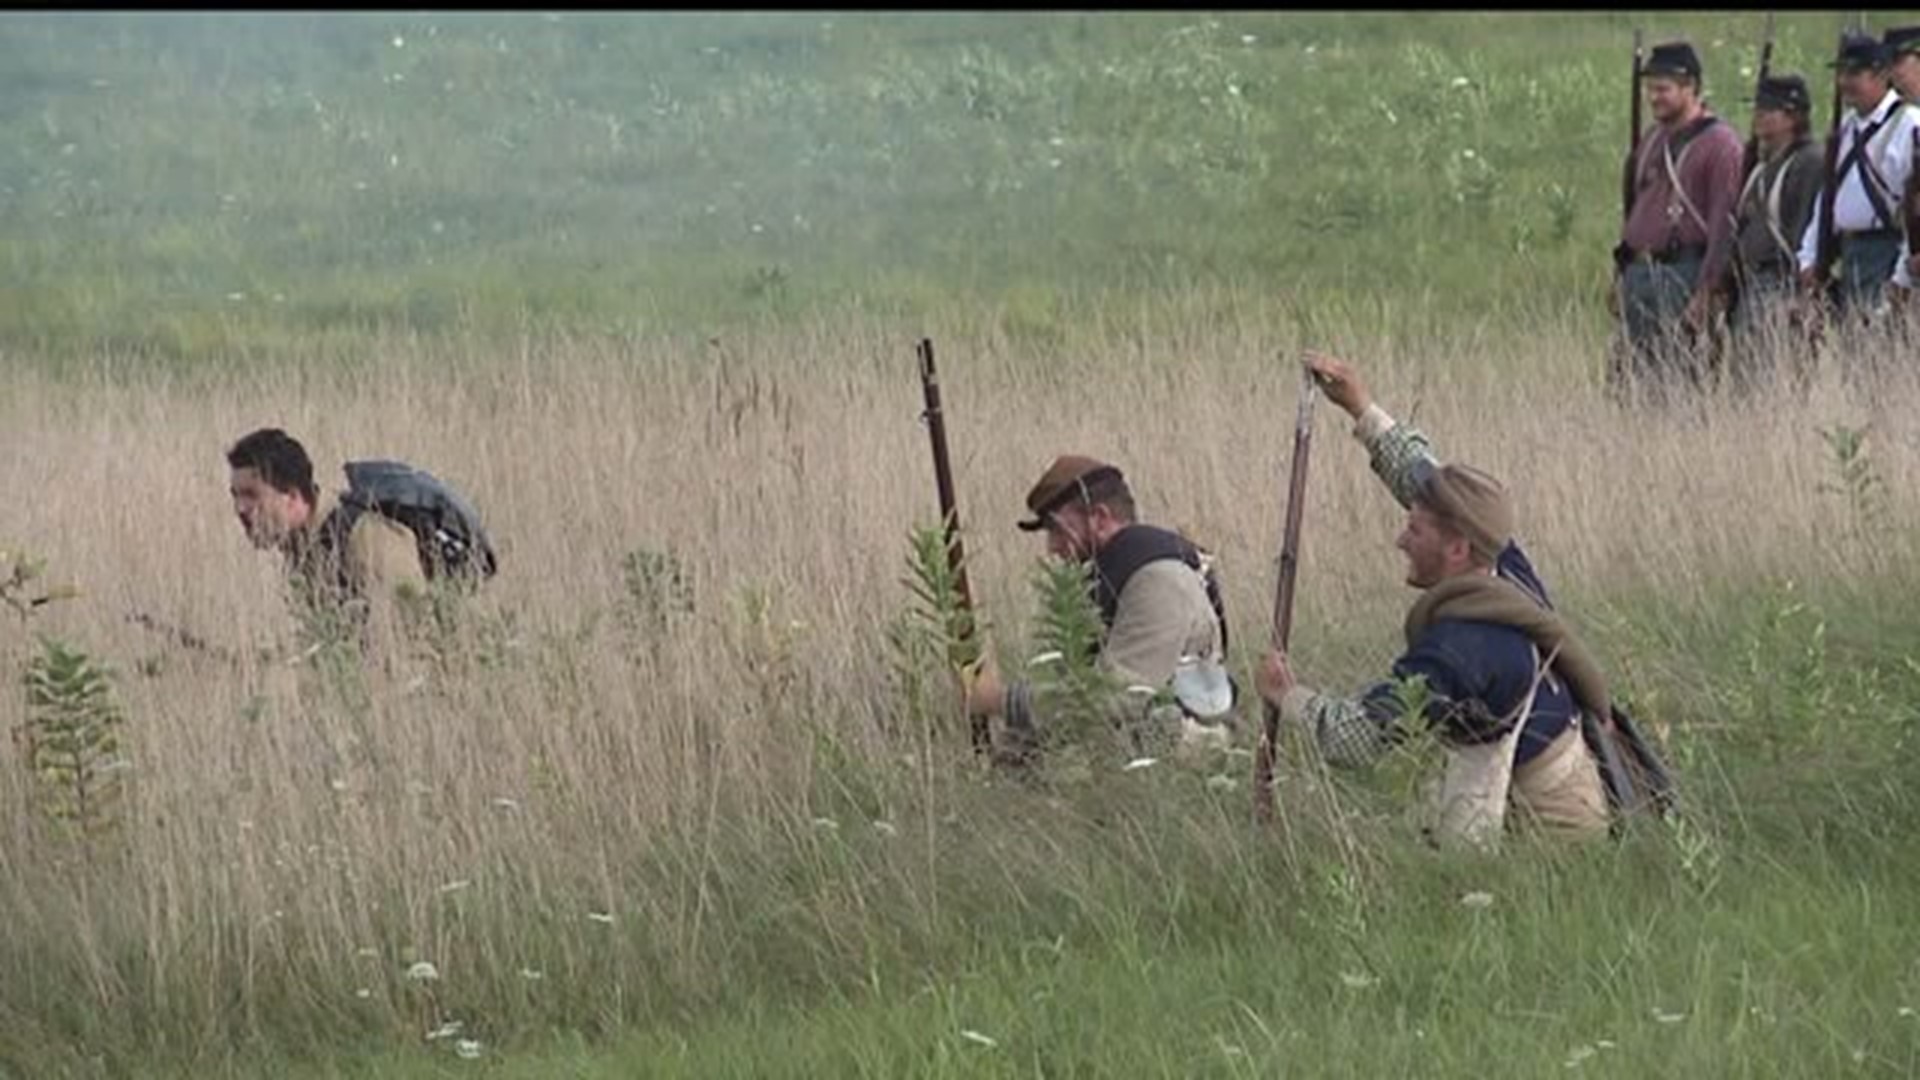 Gettysburg Battle reenactment kicked off this weekend